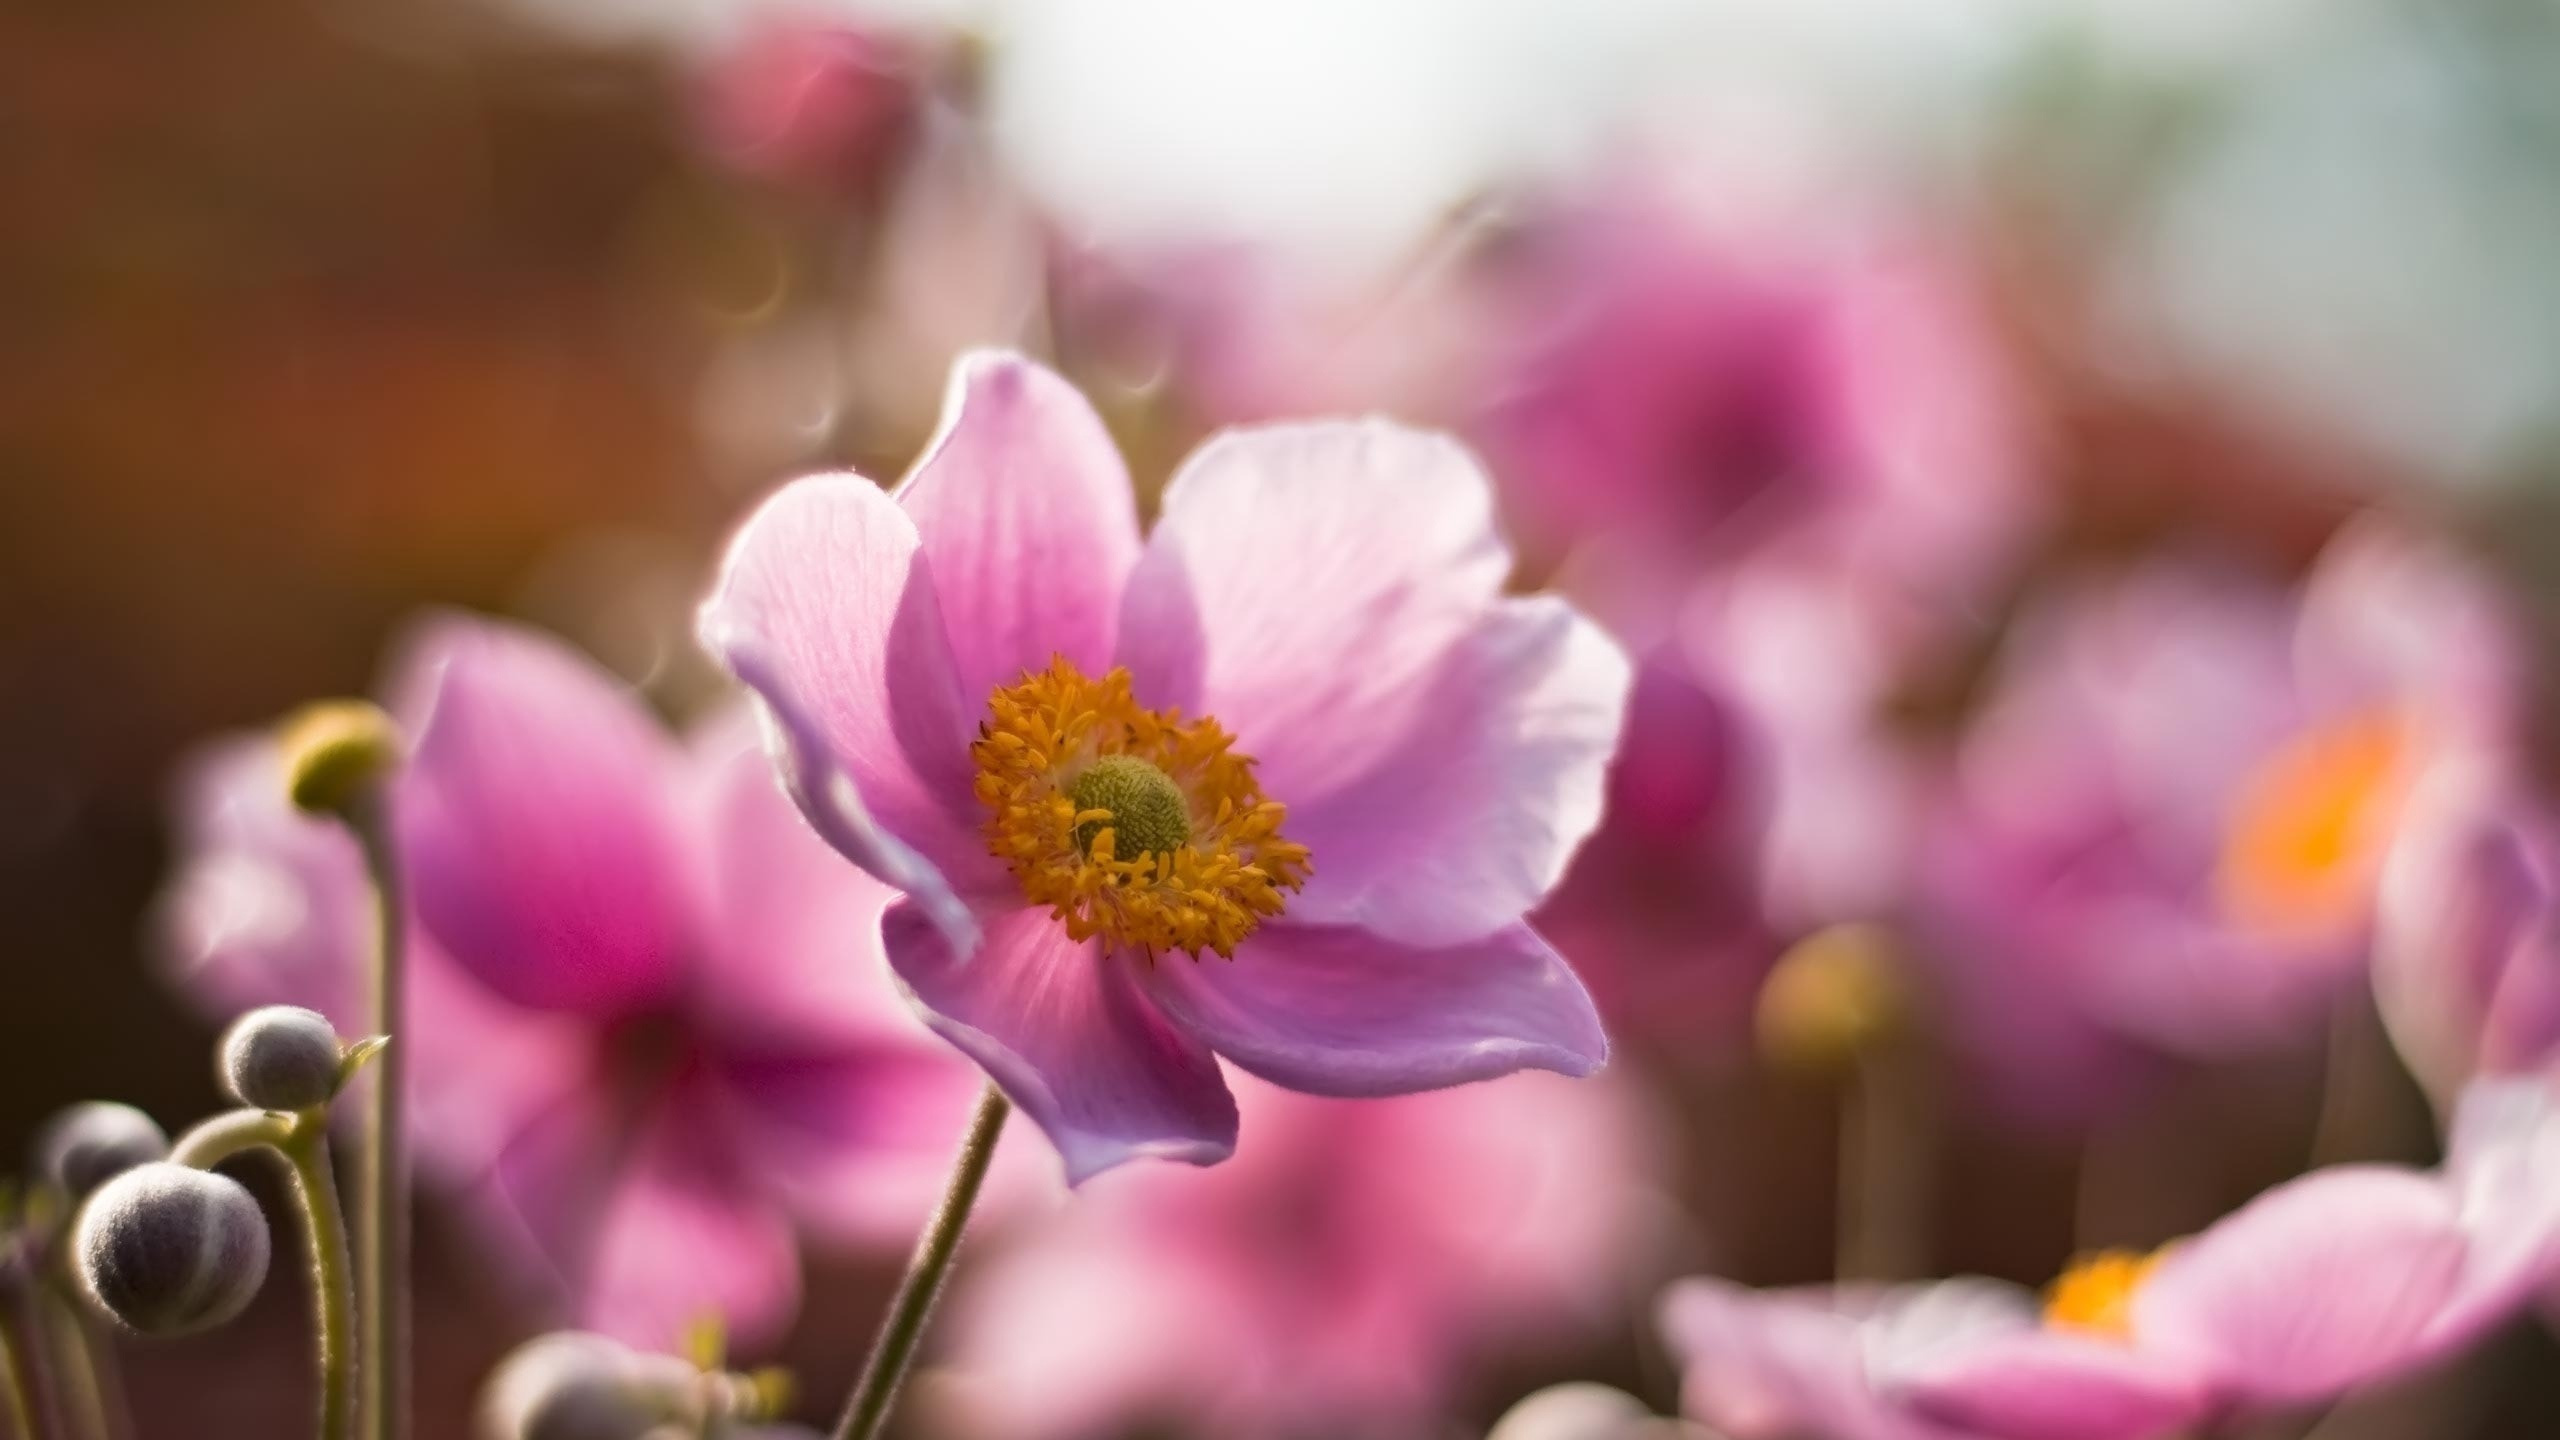 Pink Flower in Tilt Shift Lens. Wallpaper in 2560x1440 Resolution